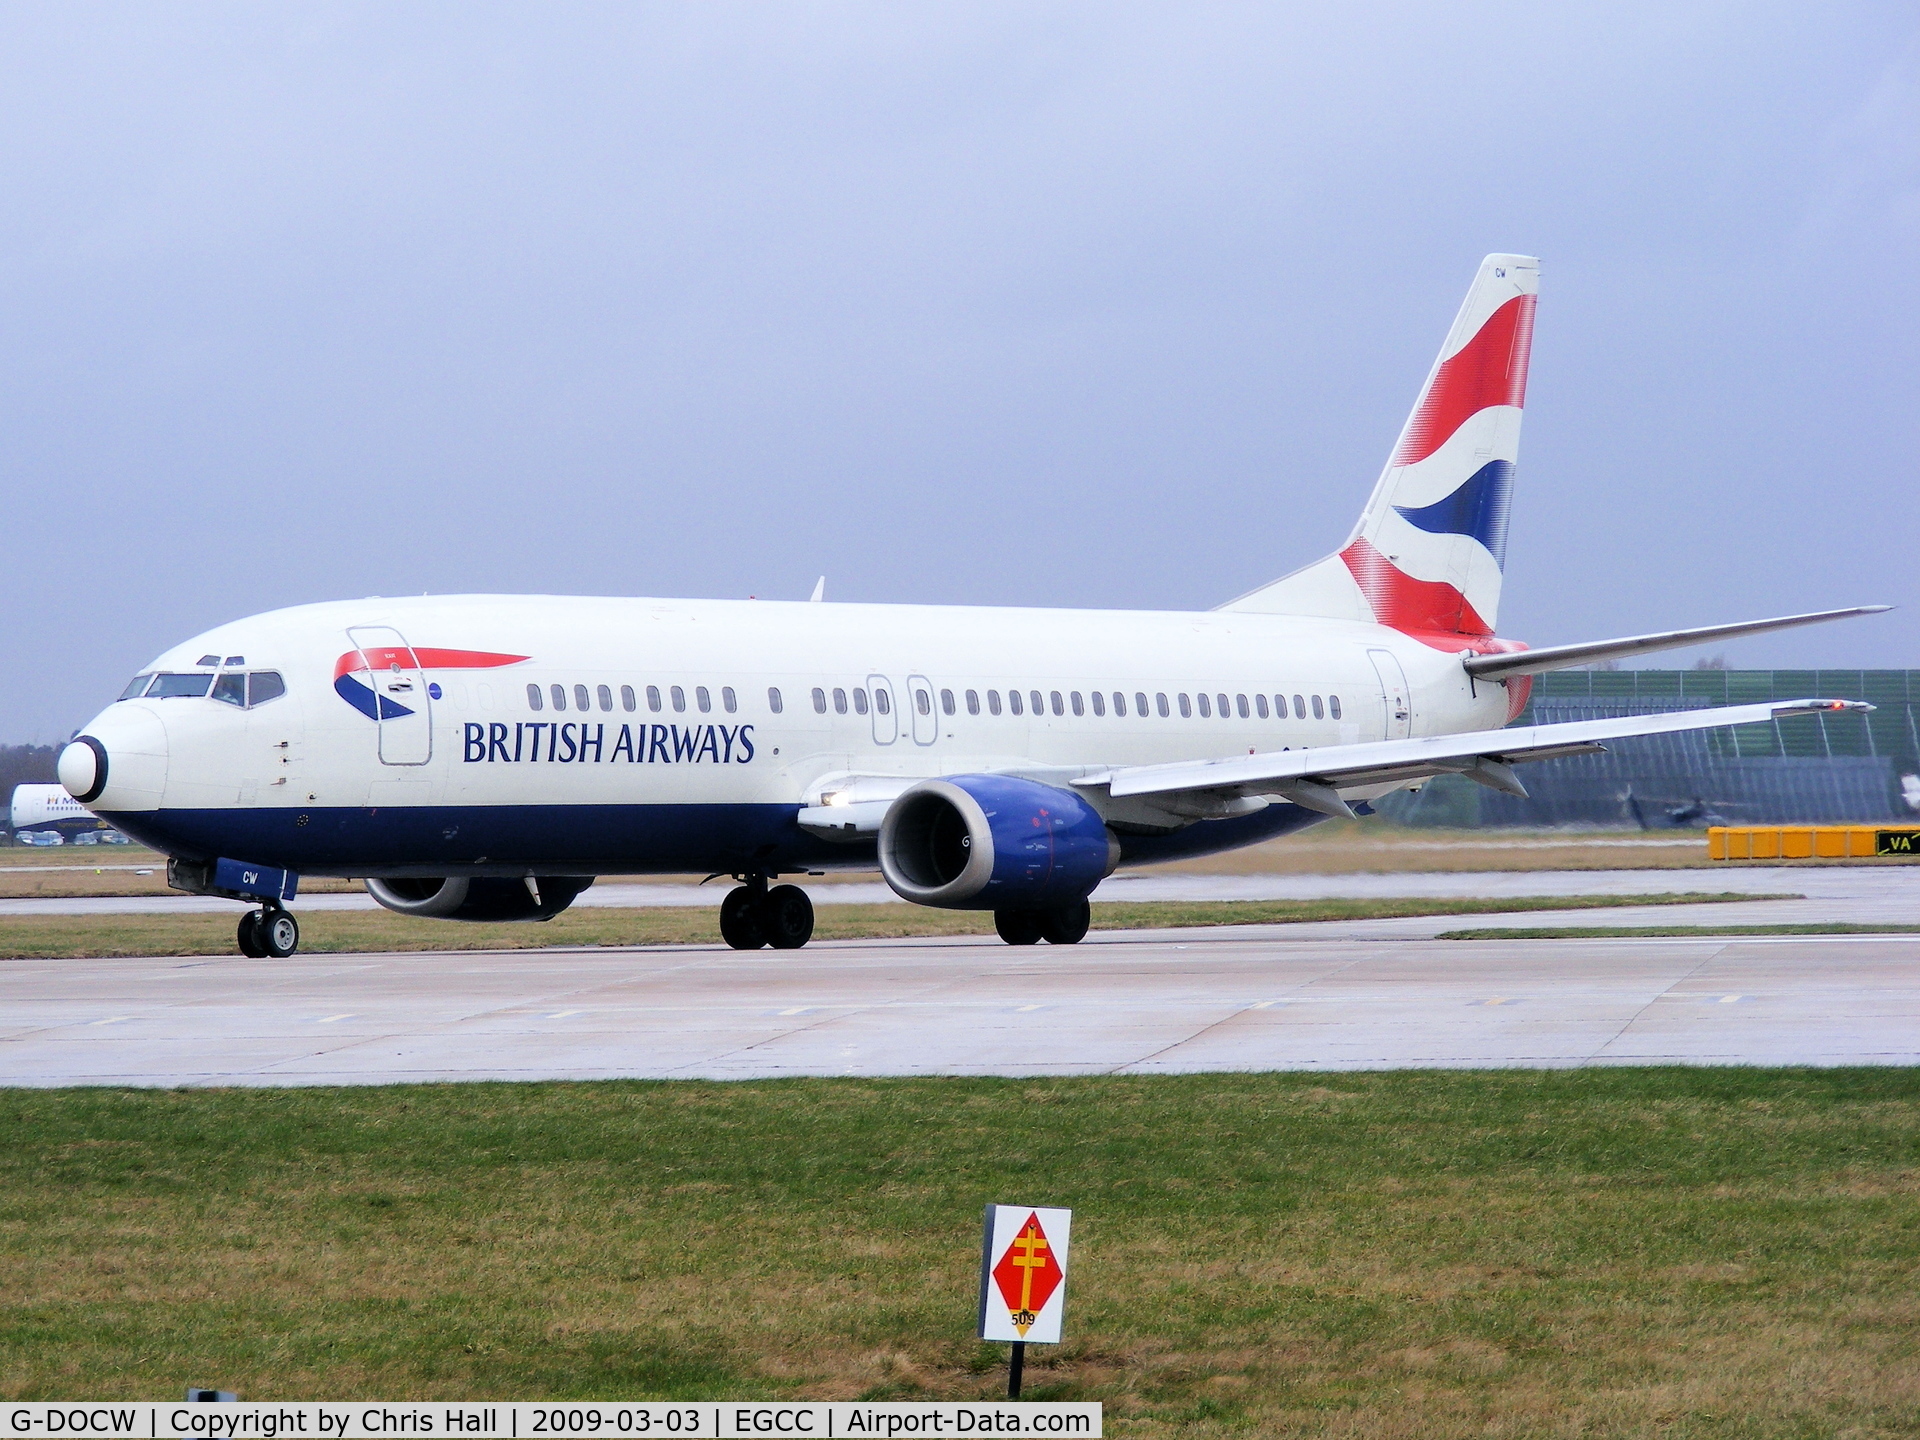 G-DOCW, 1992 Boeing 737-436 C/N 25856, British Airways